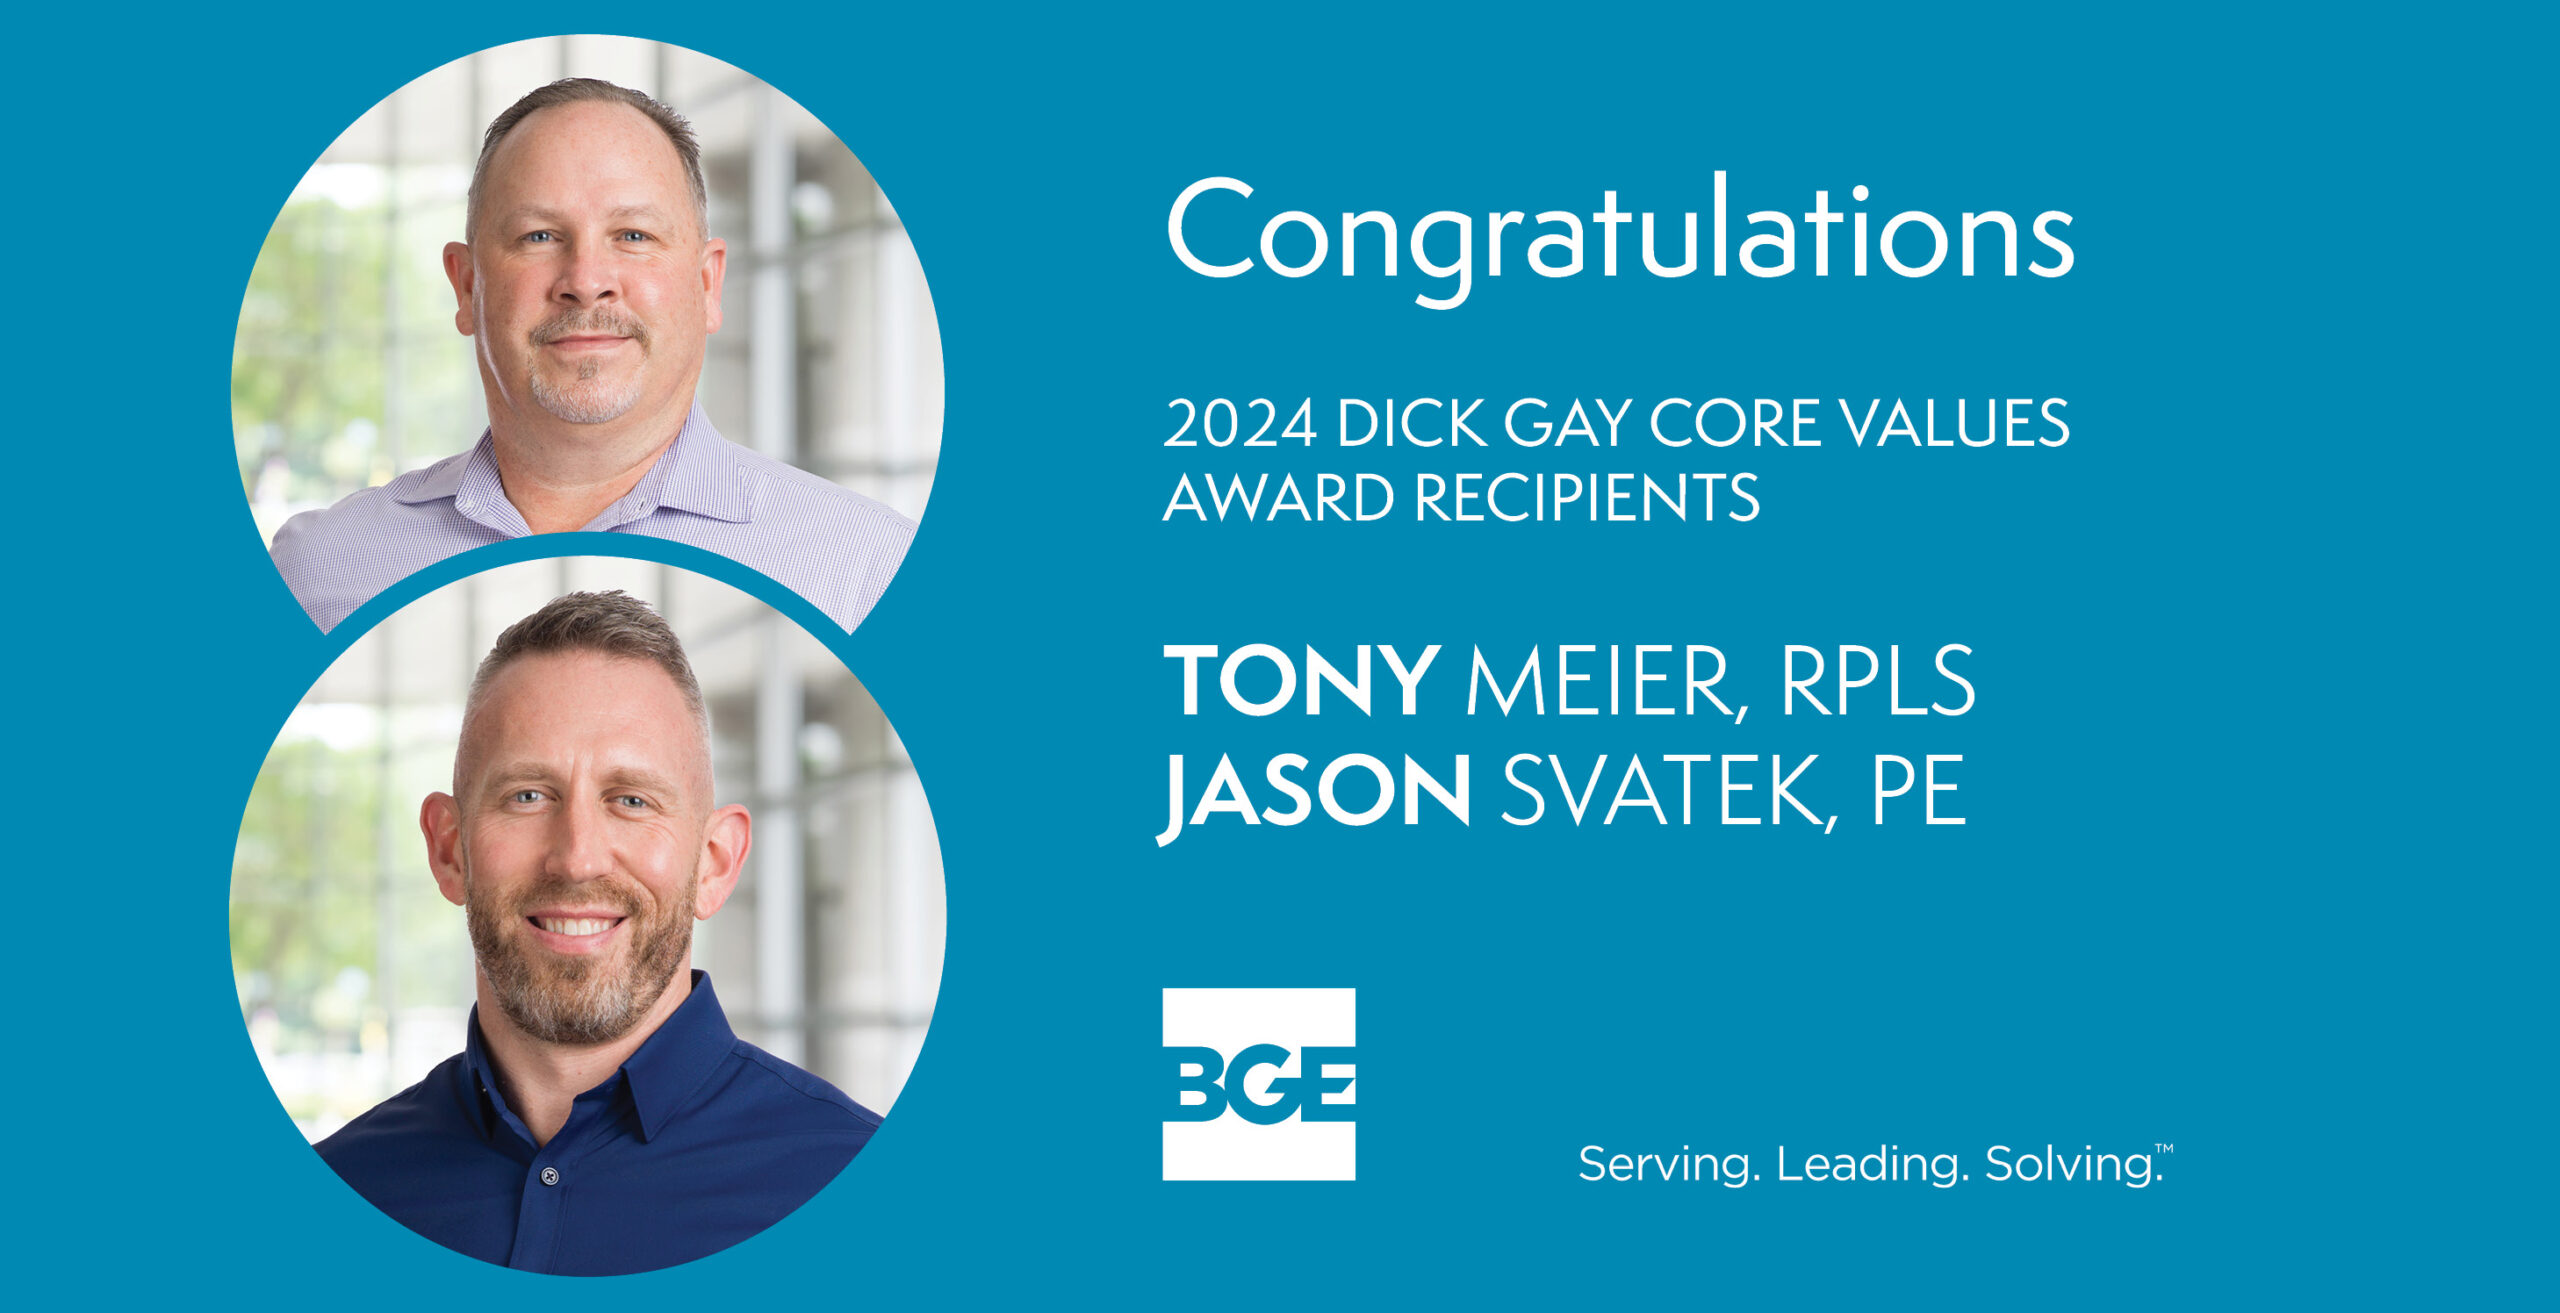 BGE Announces 2024 Dick Gay Core Values Award Recipients